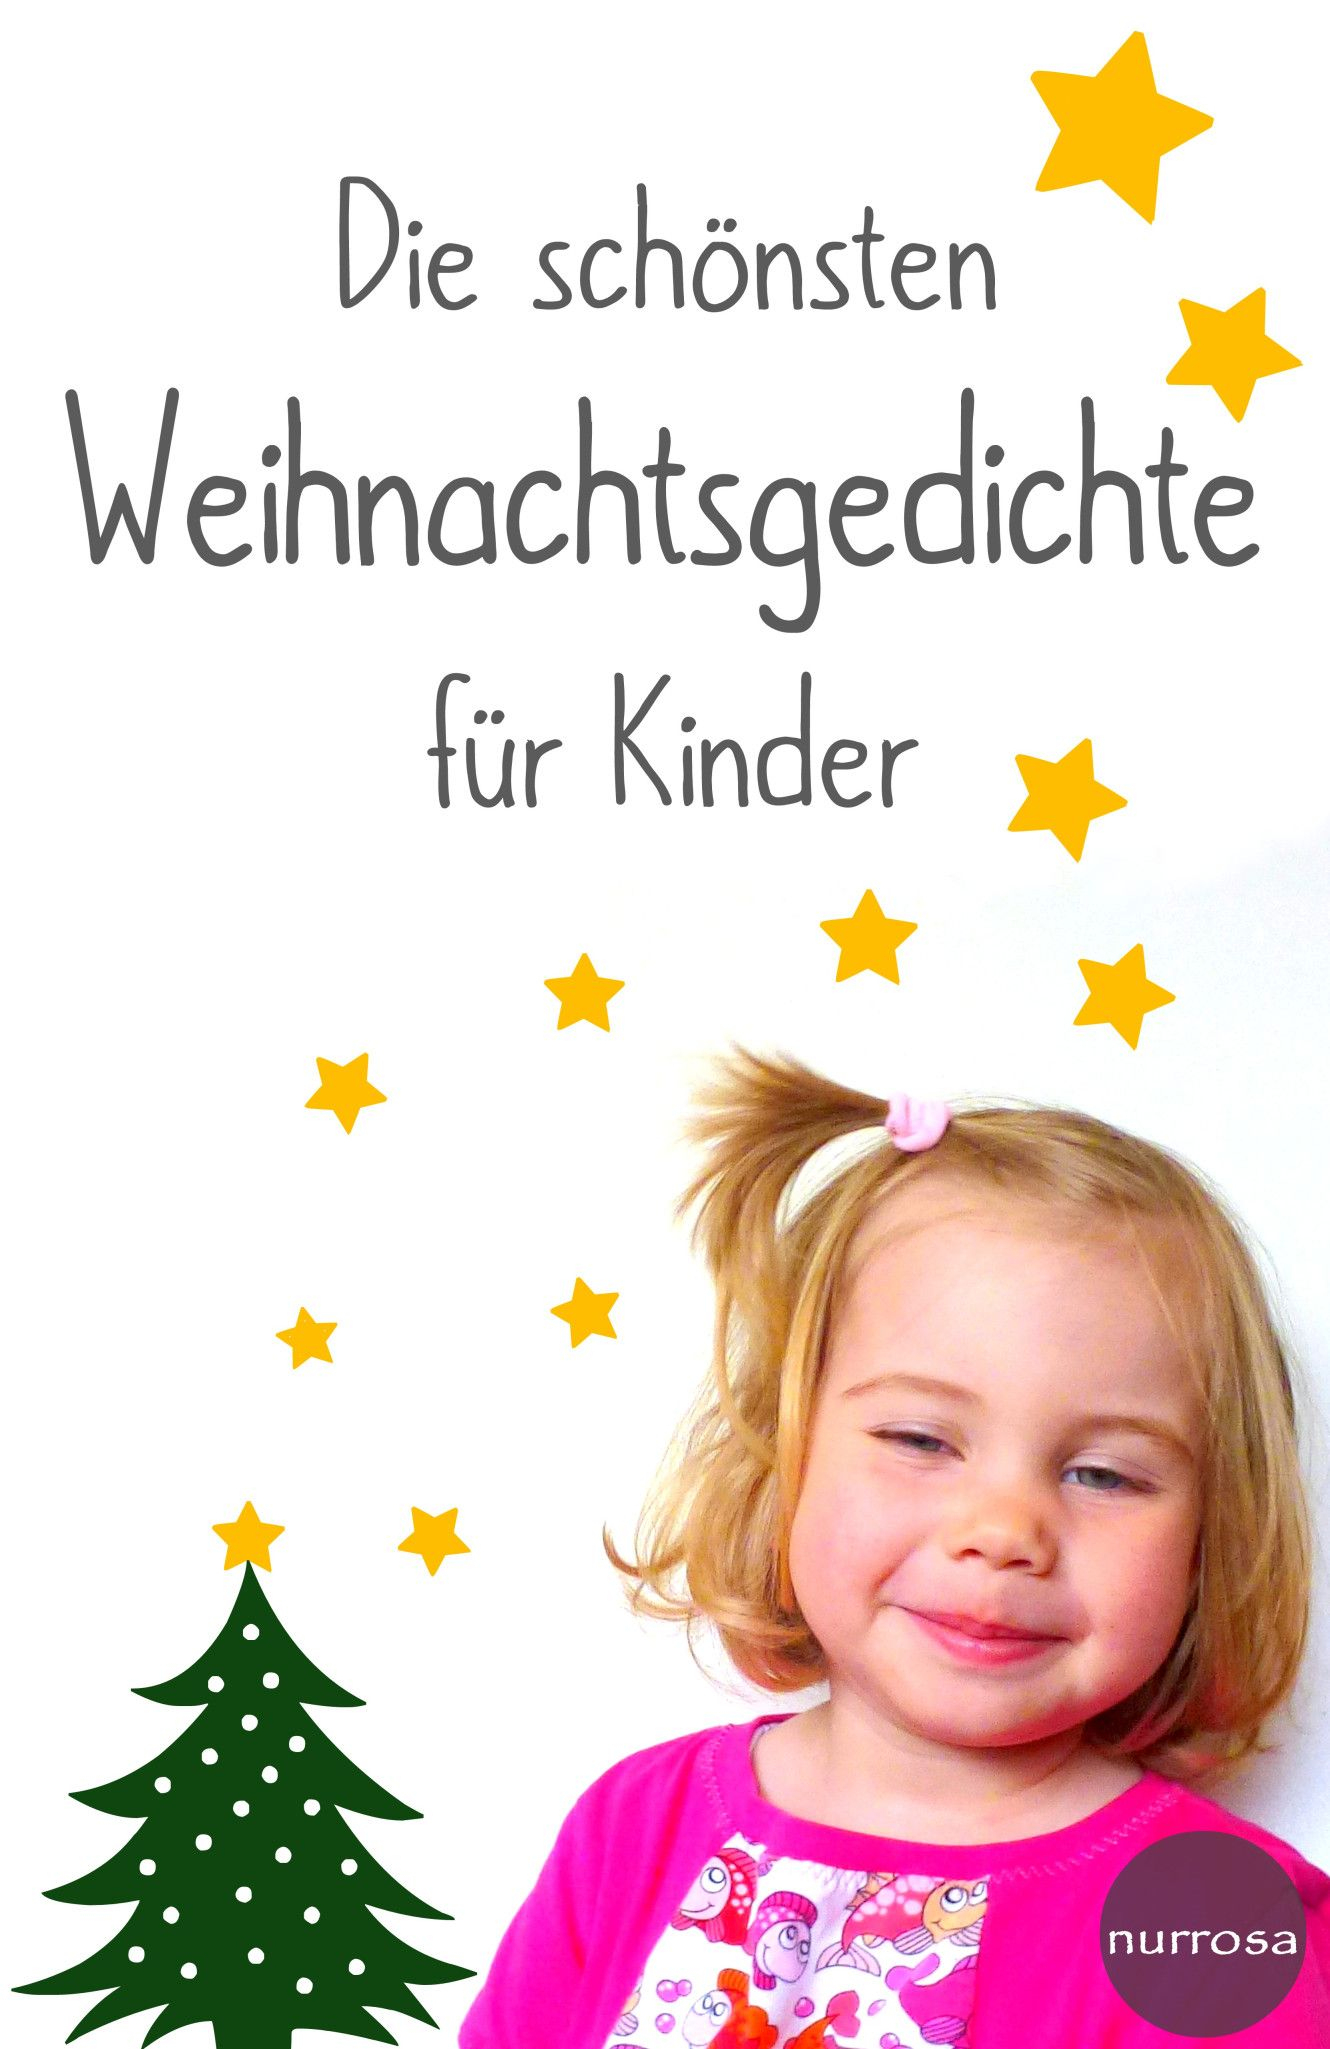 Die Schönsten Weihnachtsgedichte Für Kinder (Mit Bildern in Weihnachtsgedicht Für Kindergartenkinder Kurz